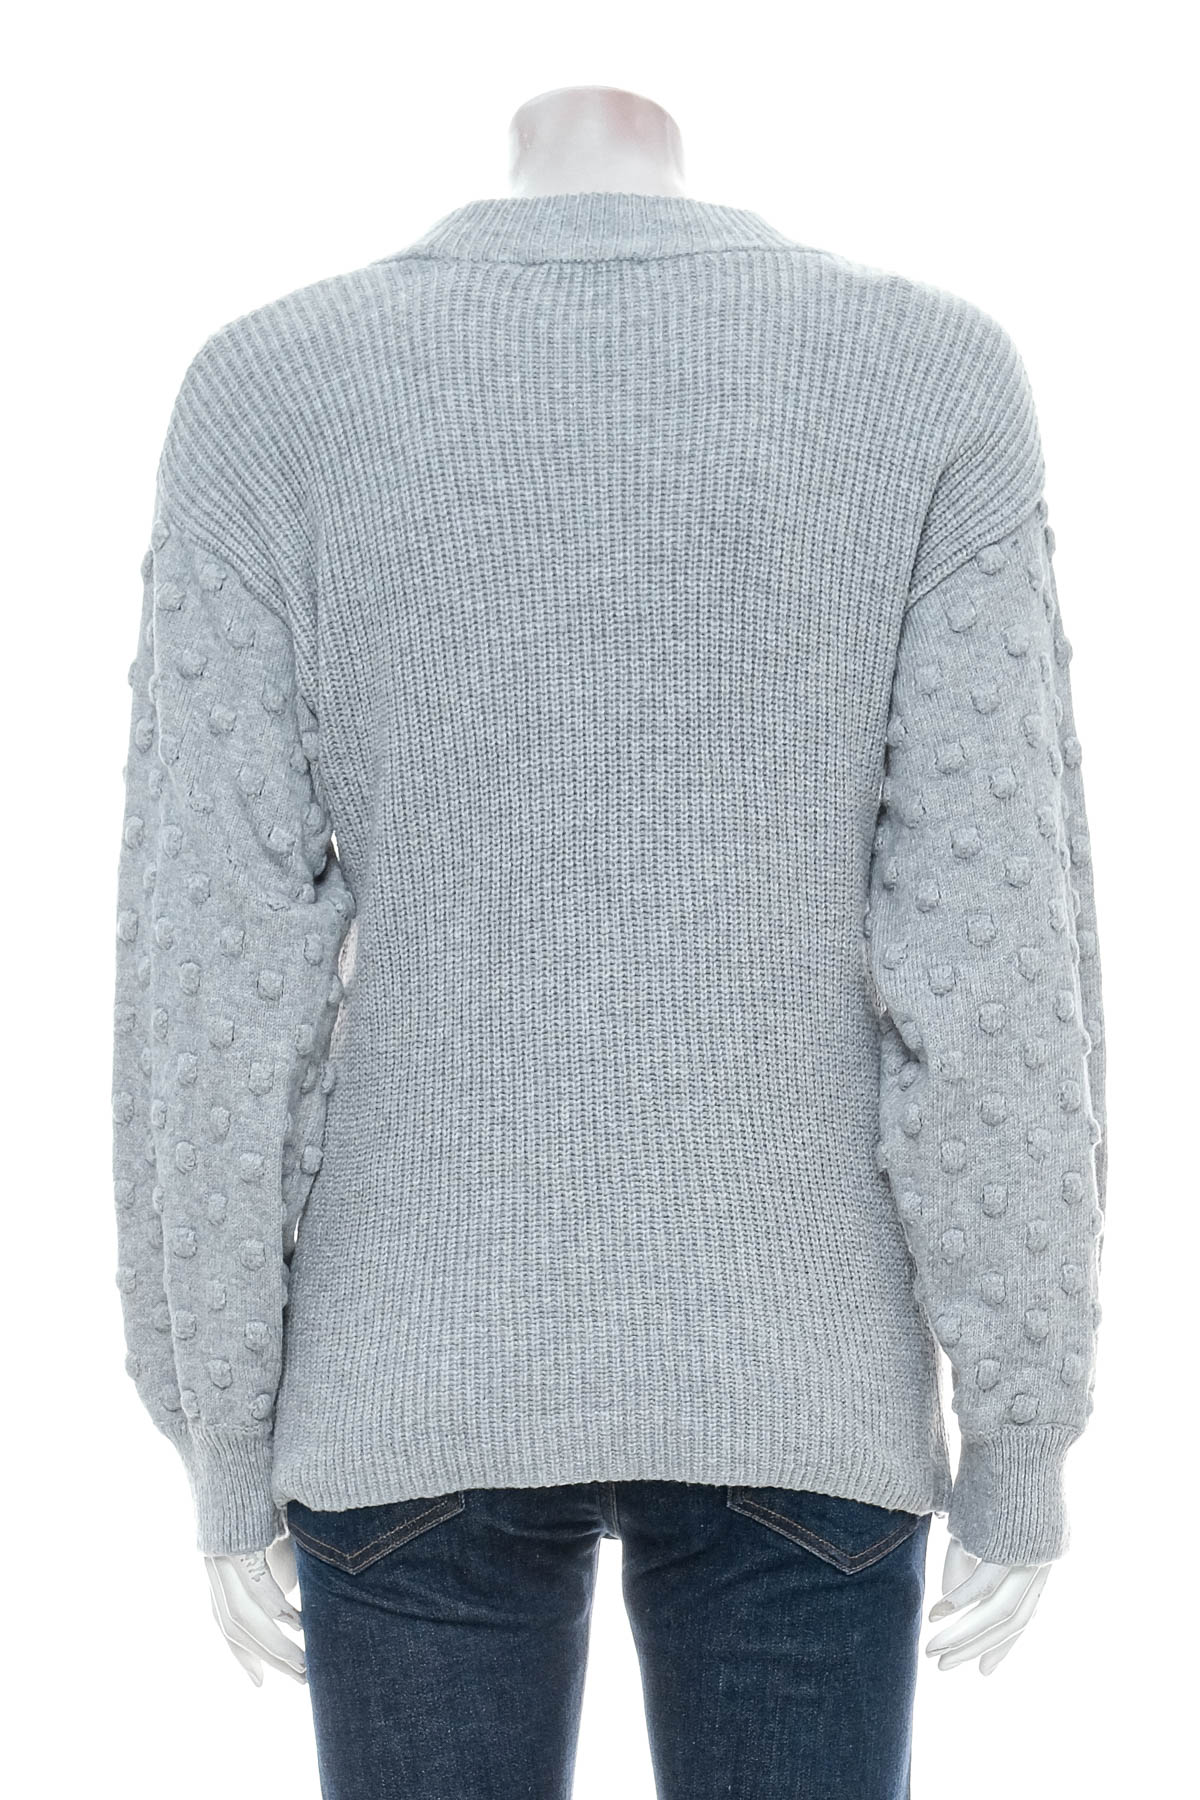 Women's sweater - CECE - 1